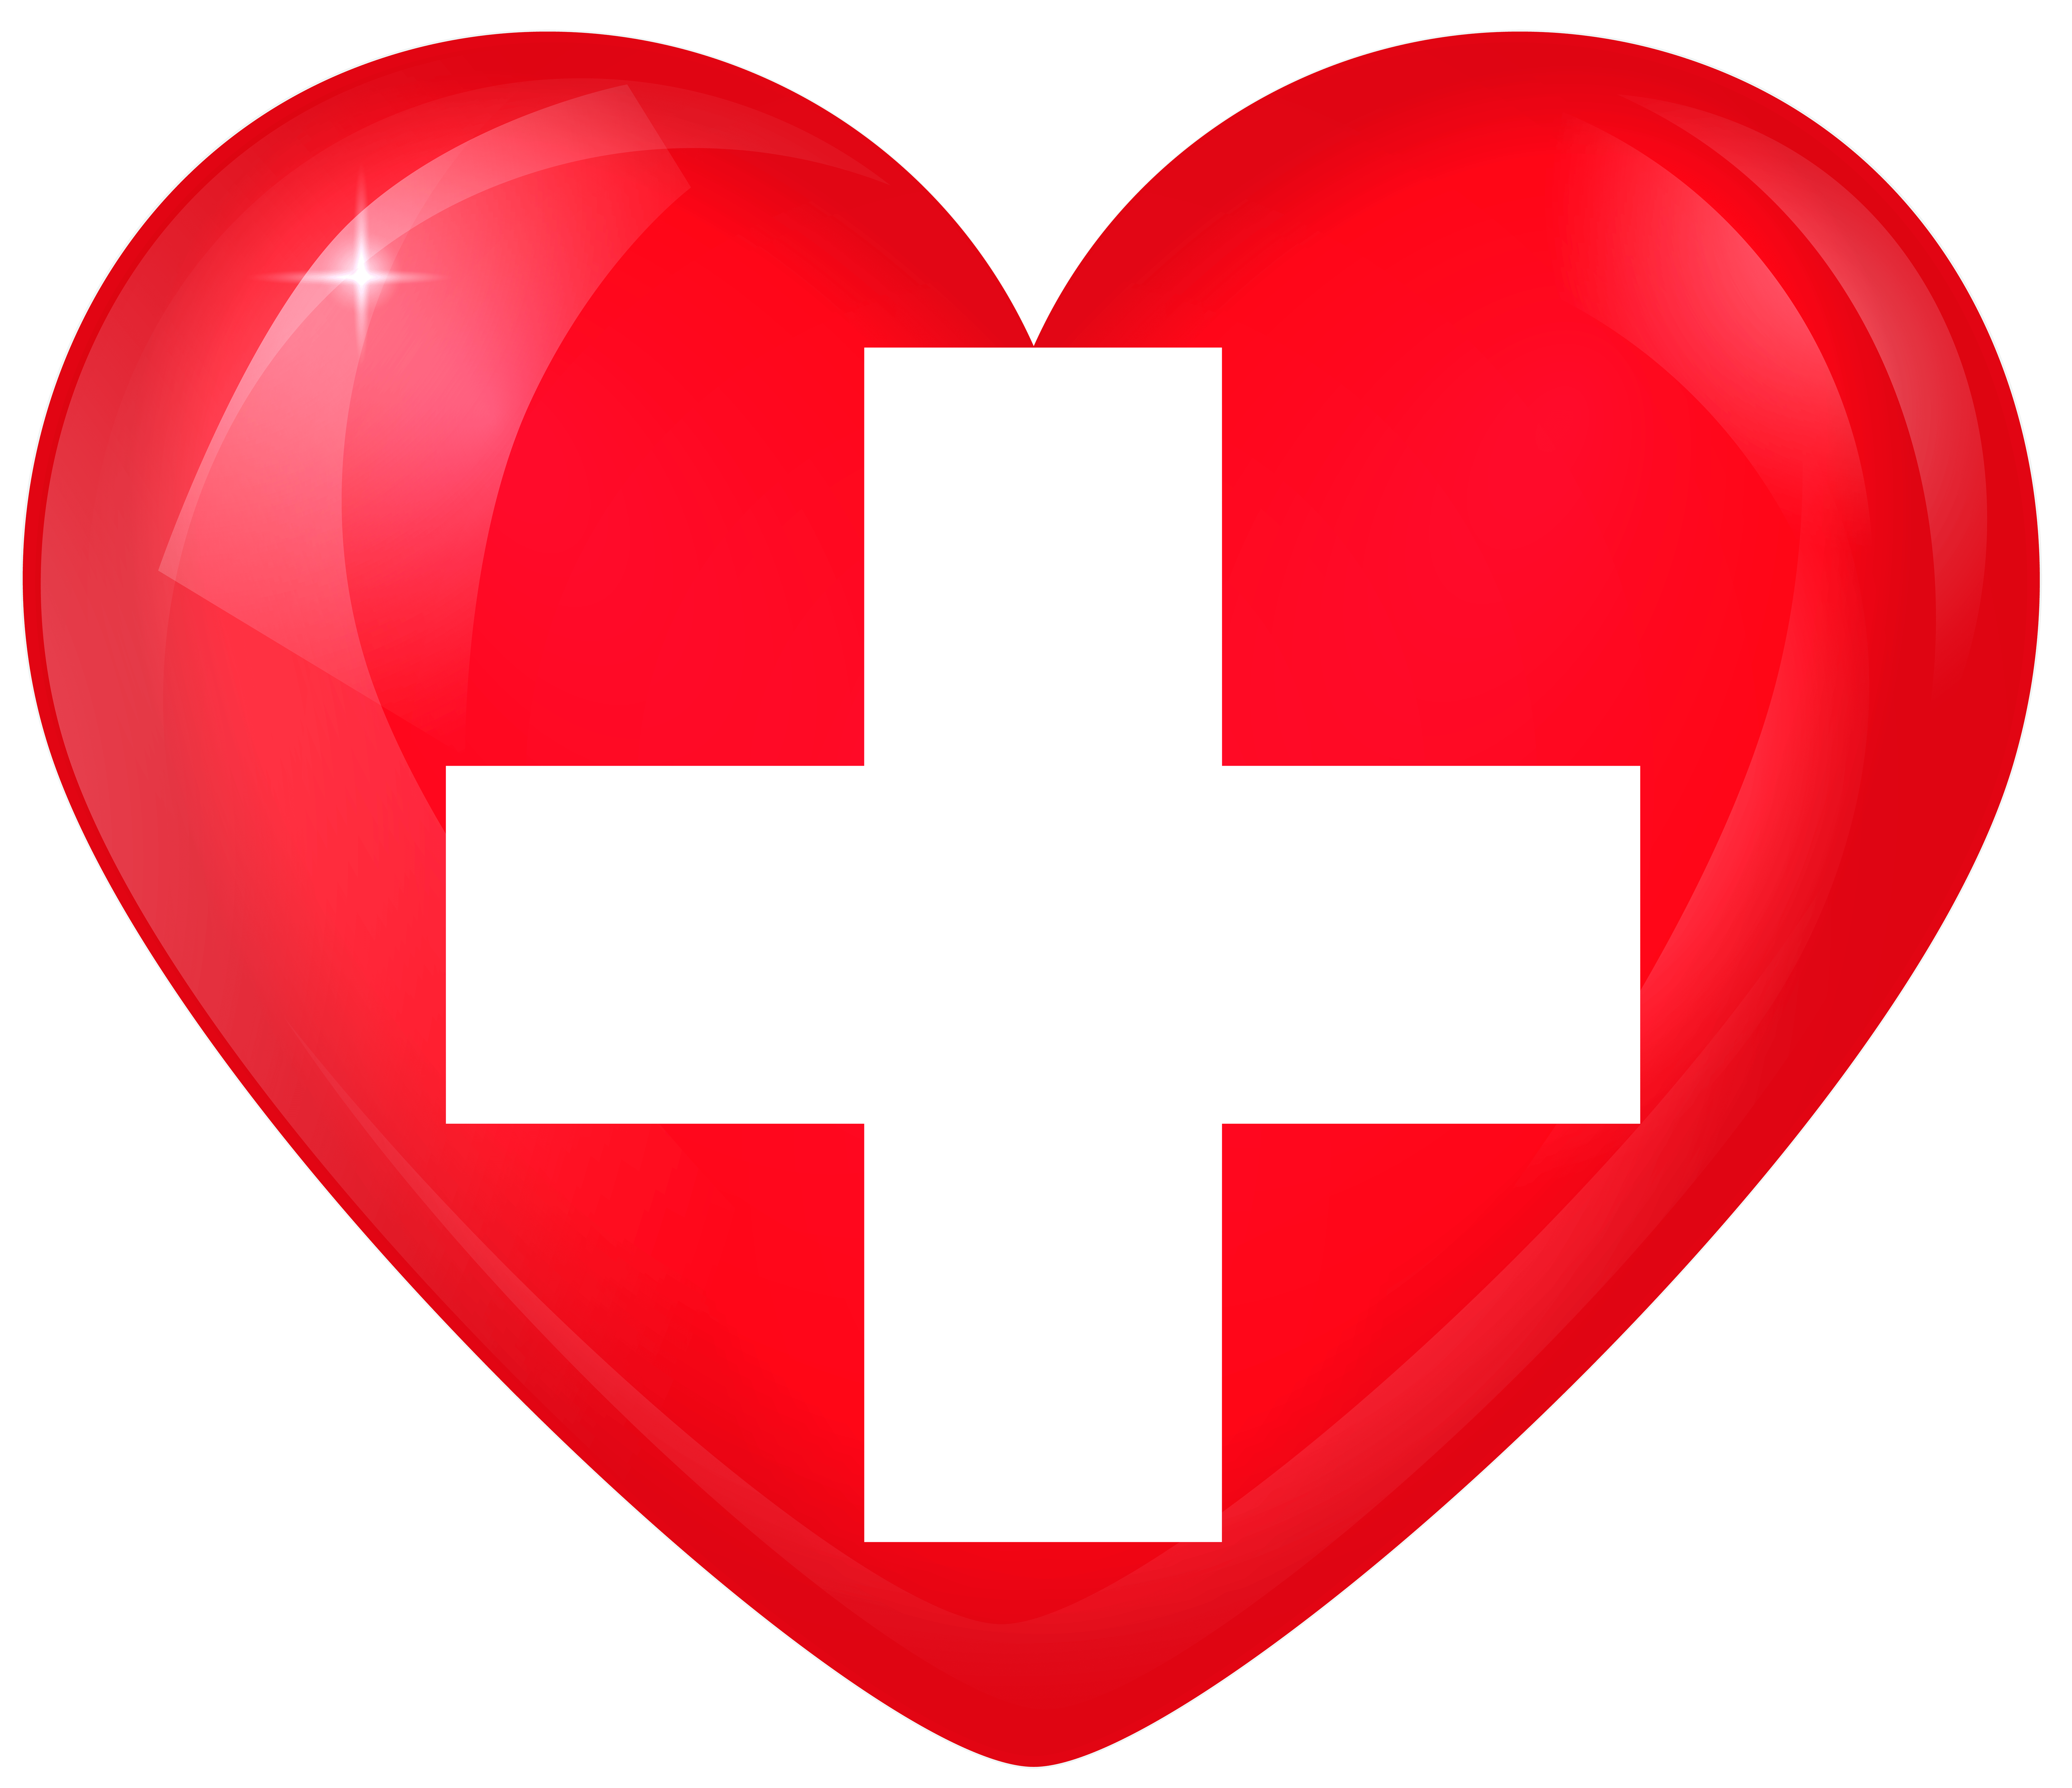 Switzerland Large Heart Flag